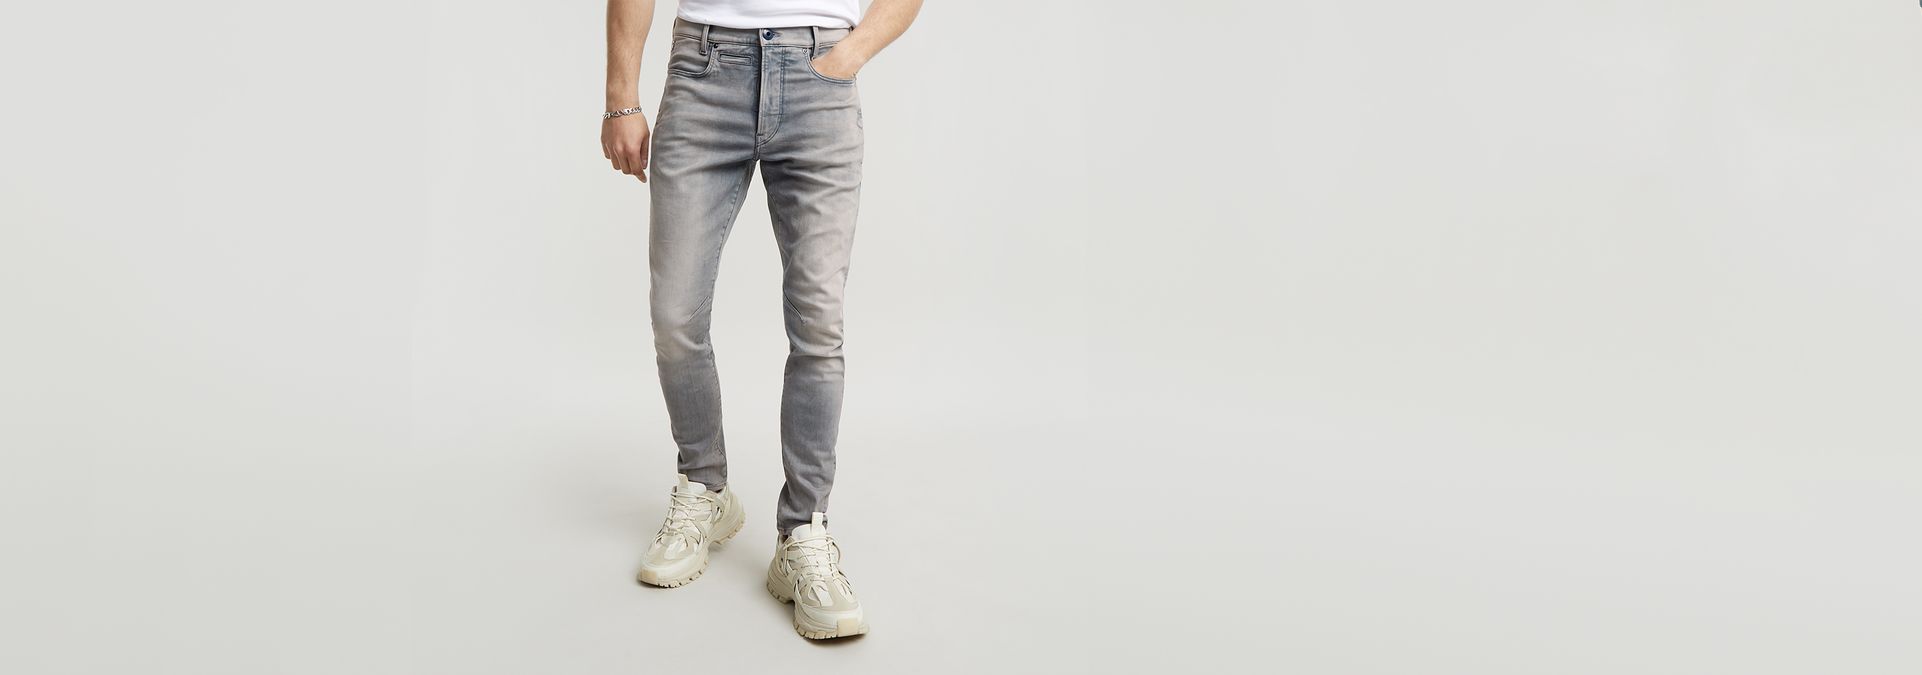 G-Star Raw Rackam - Jeans ajustados 3D para hombre, Negro 